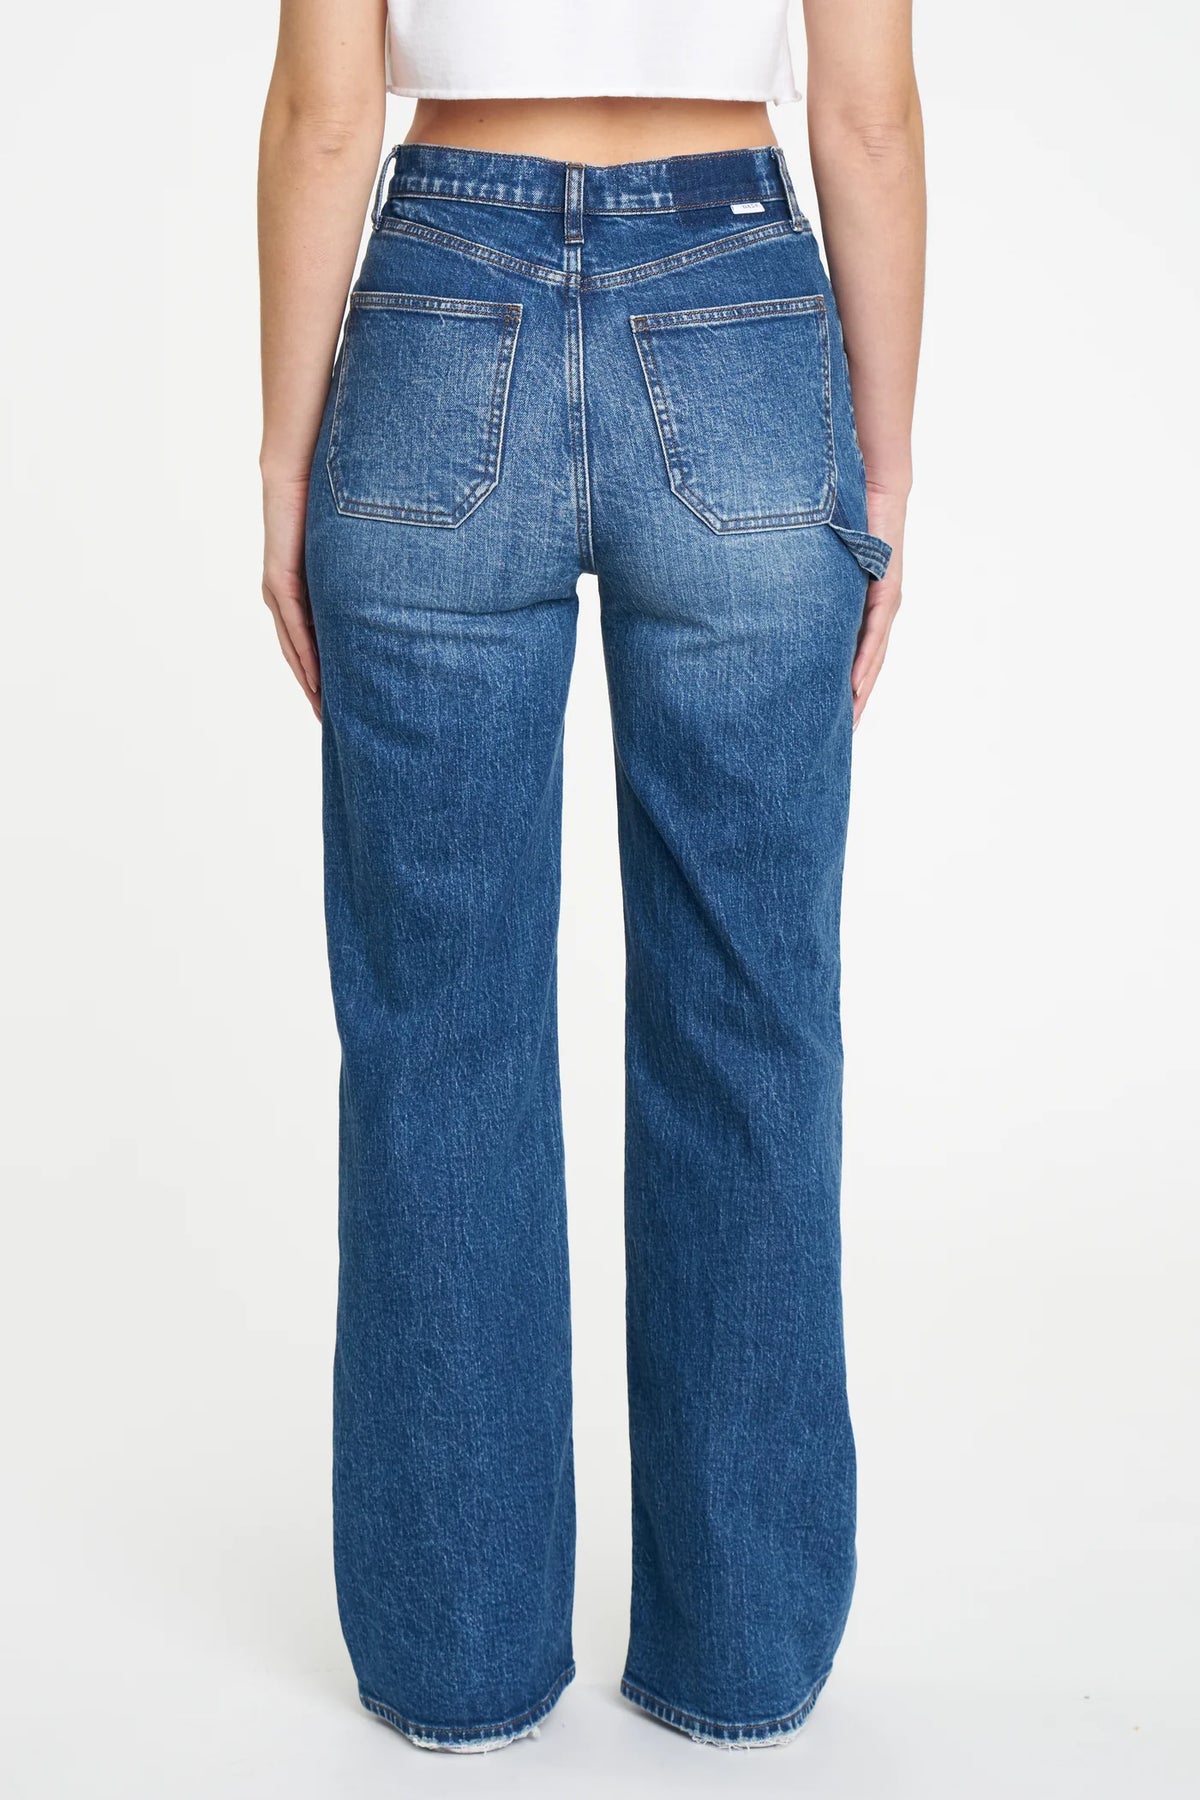 Daze Denim Far Out Patchpocket Jeans